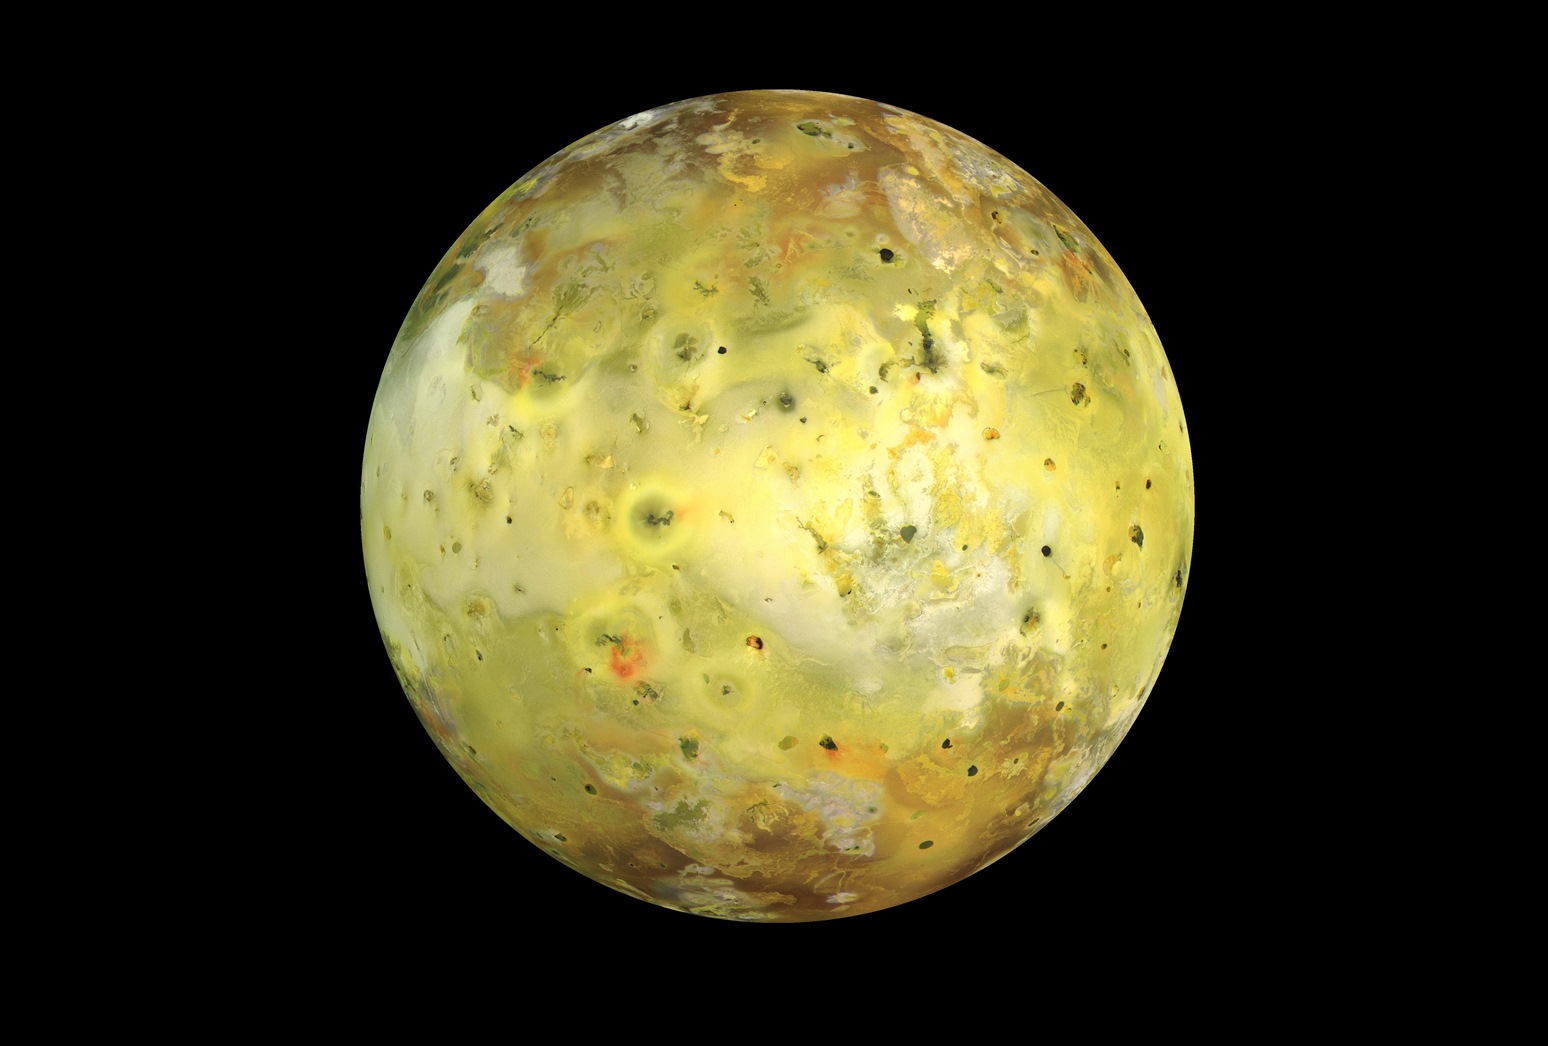 Jupiterov mjesec Io. Izvor: Wikimedia commons.